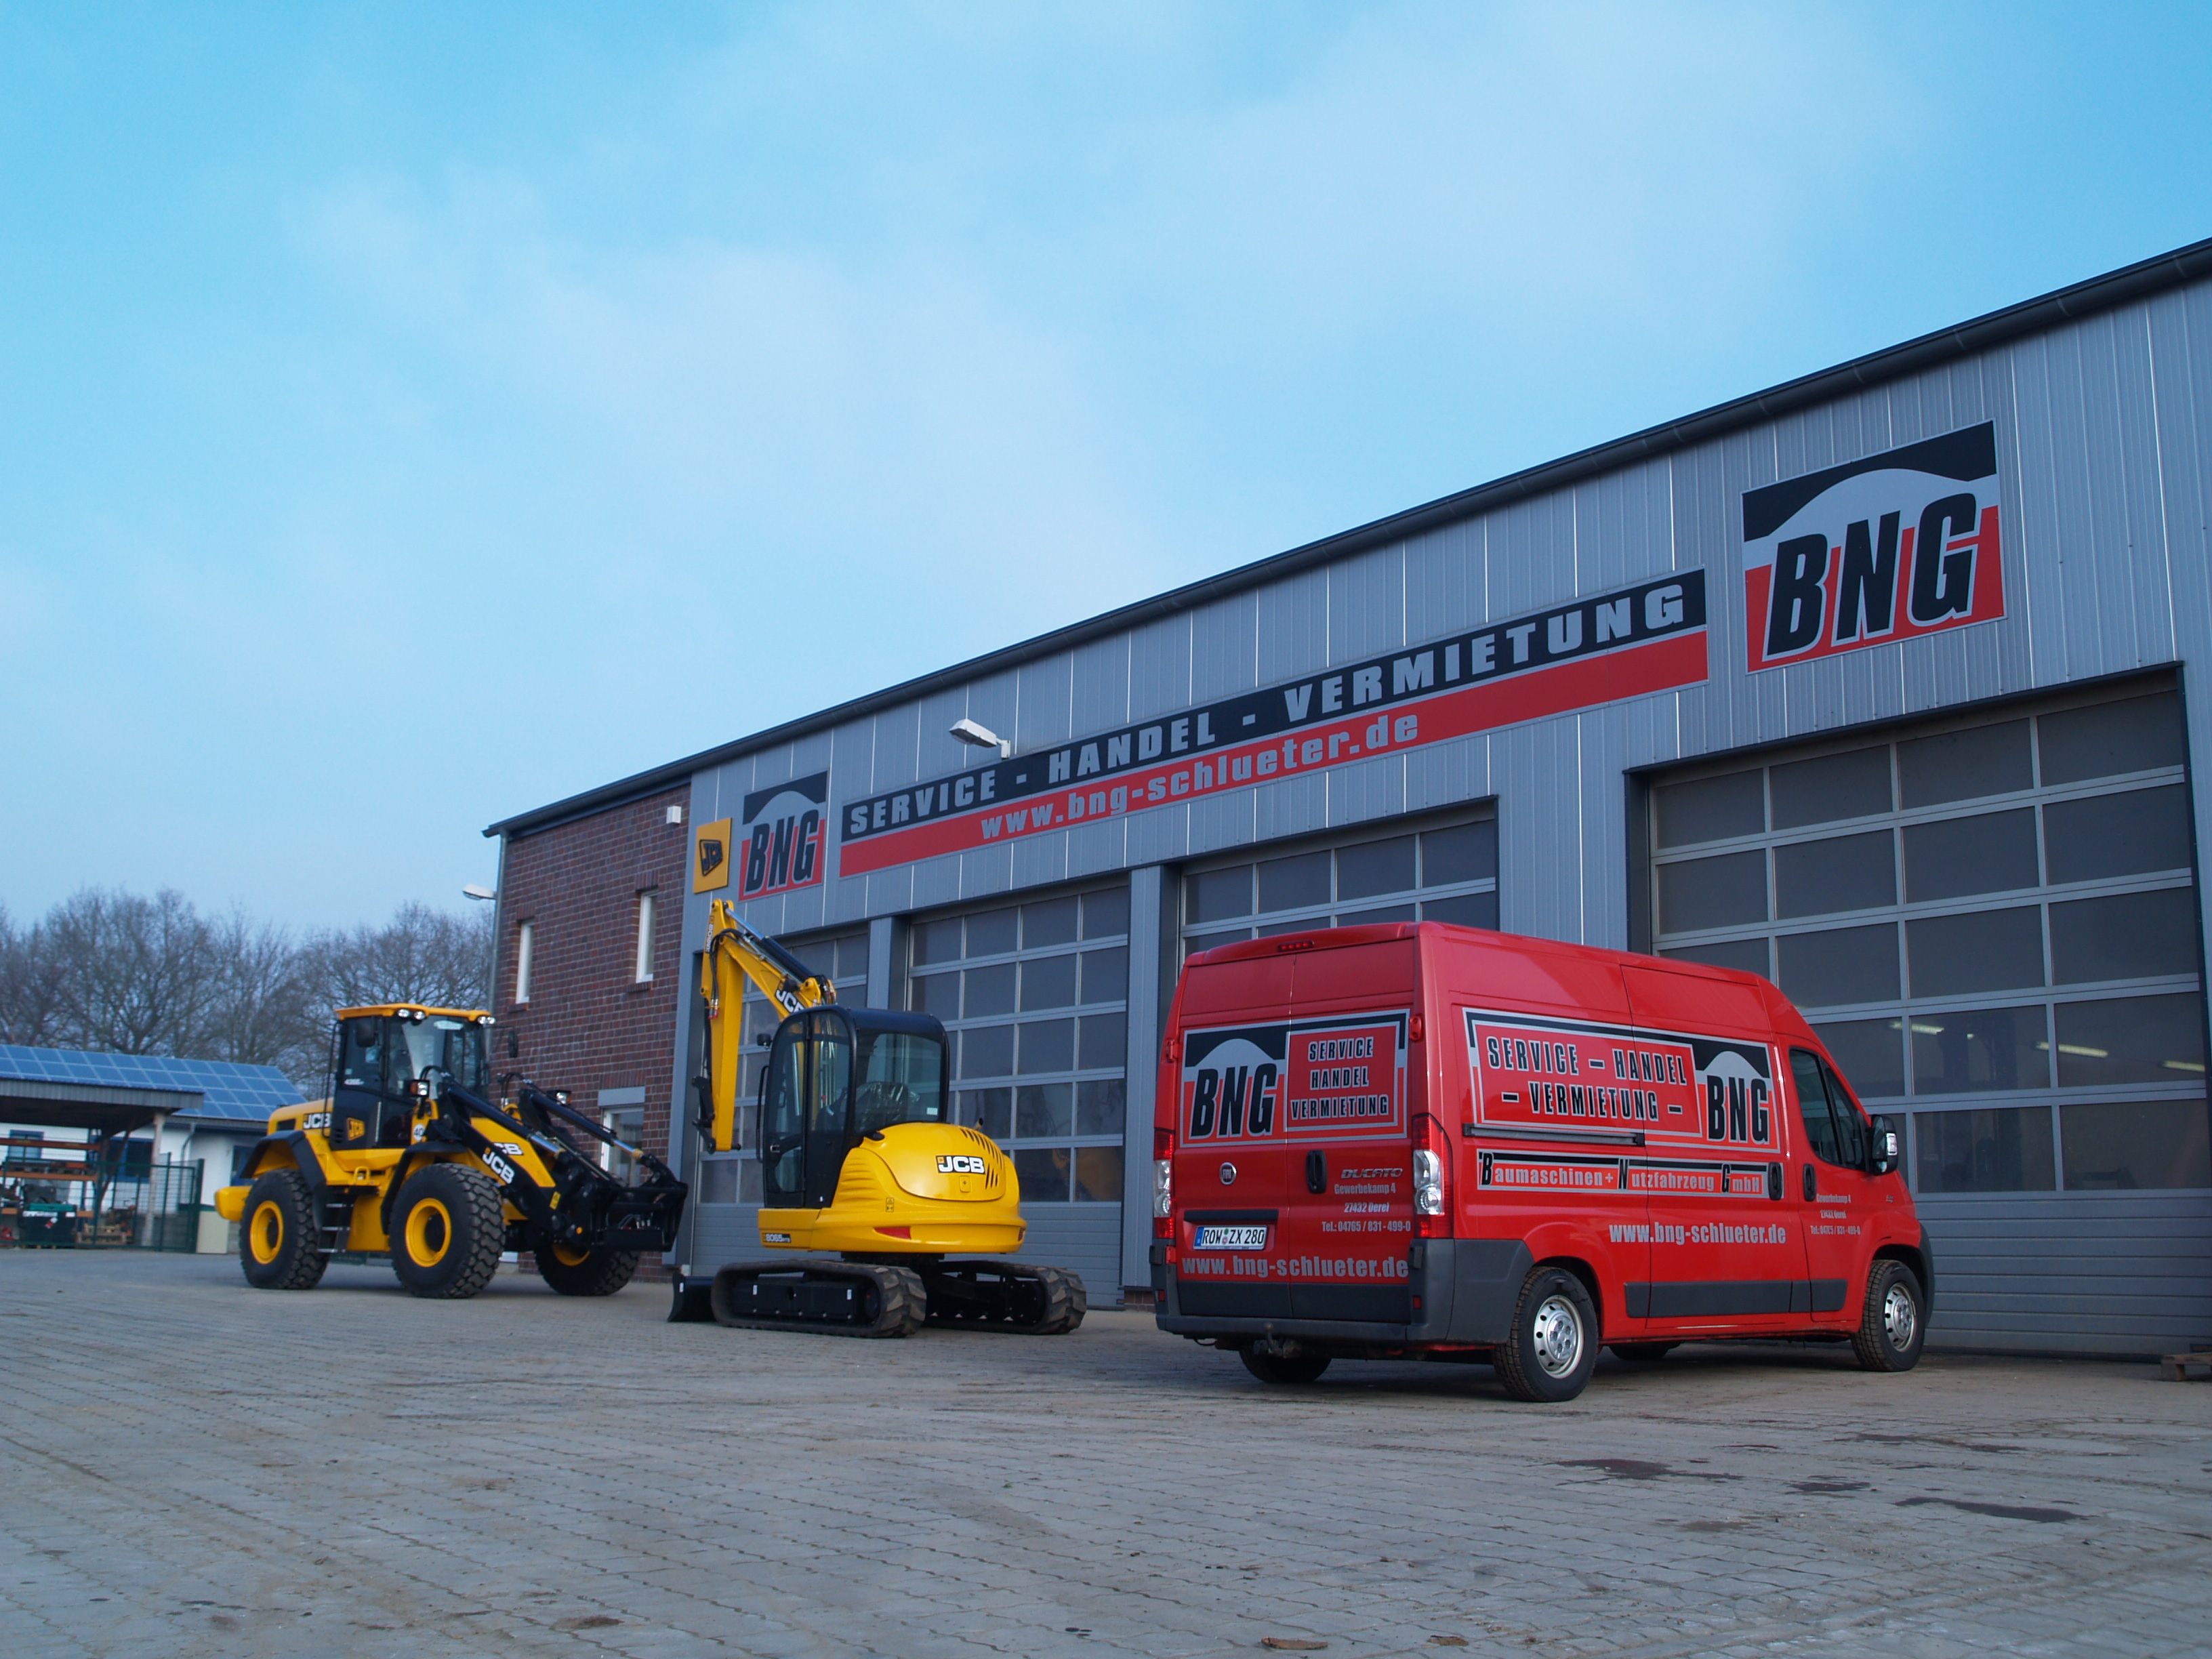 B.N.G. Baumaschinen + Nfz. GmbH - Service - Handel - Vermietung